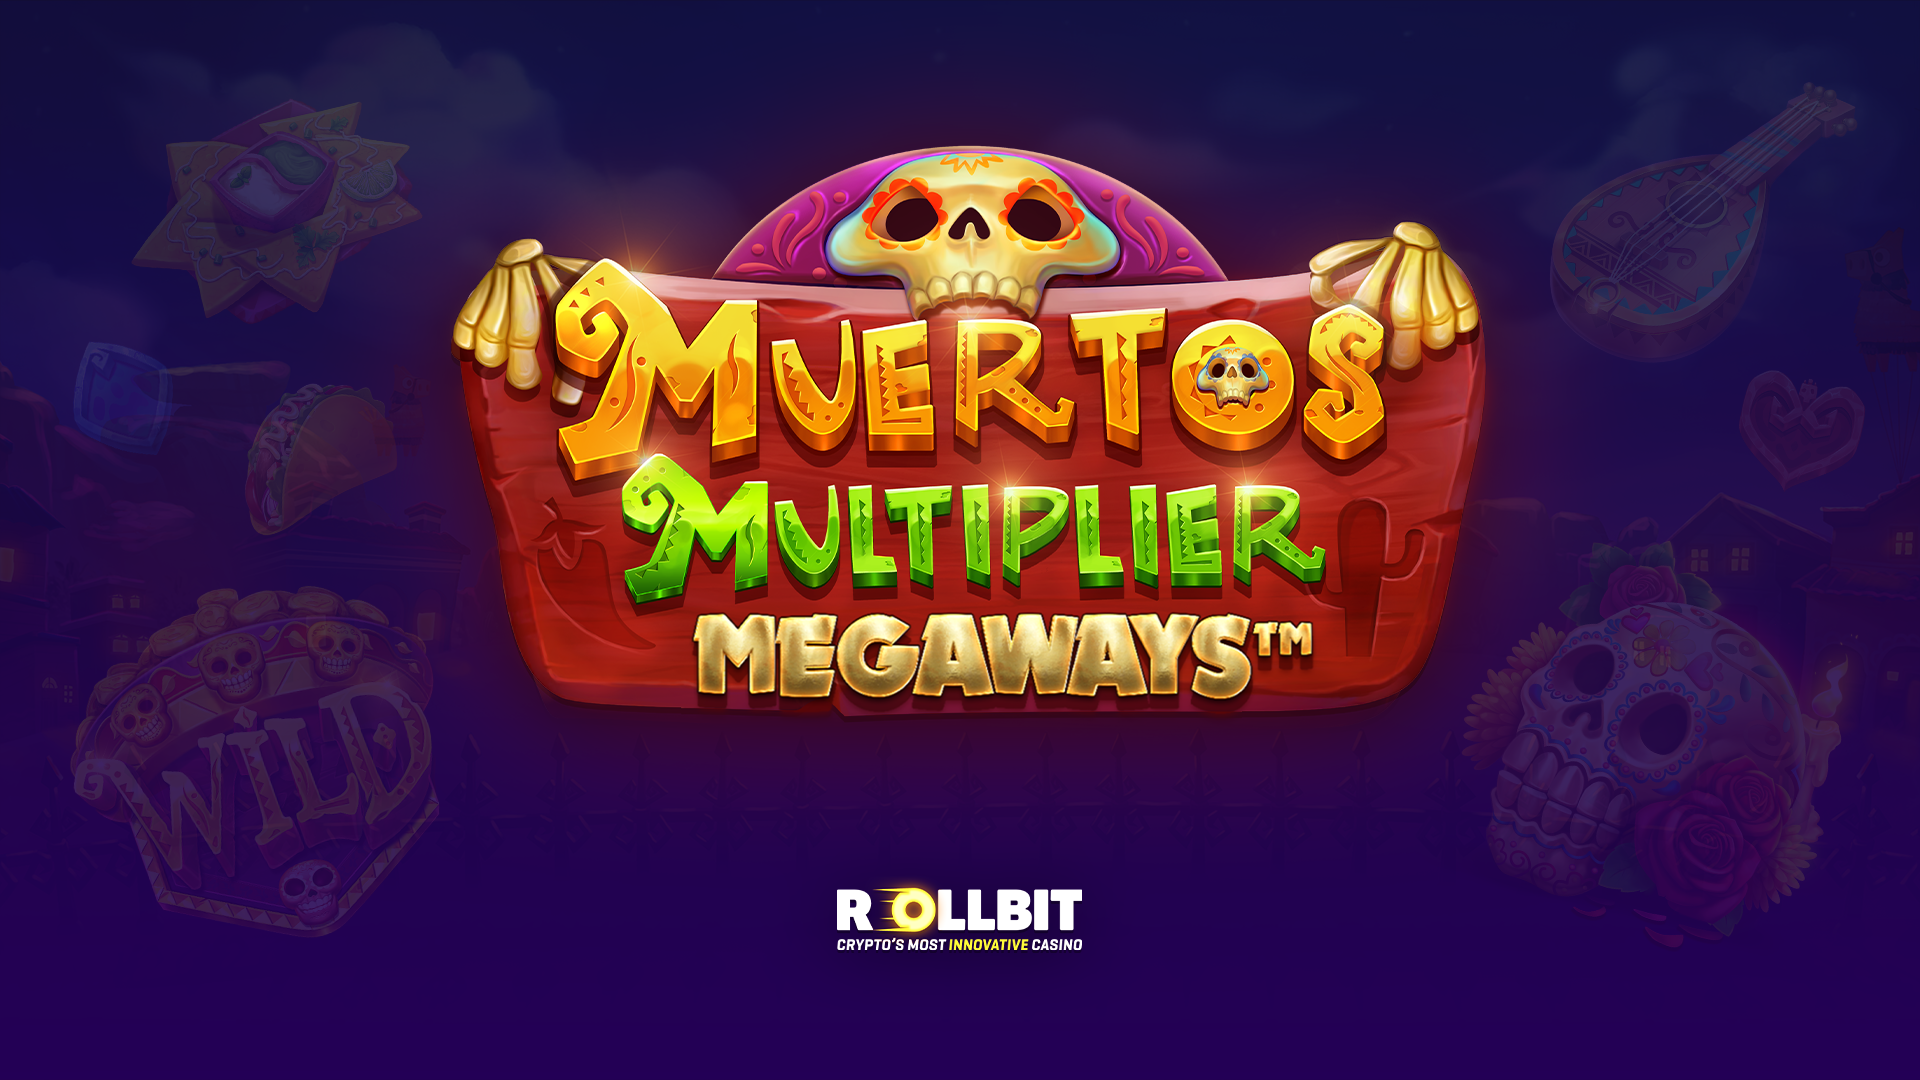 Muertos Multiplier Megaways: Deep Dive (How to max win!)🌮